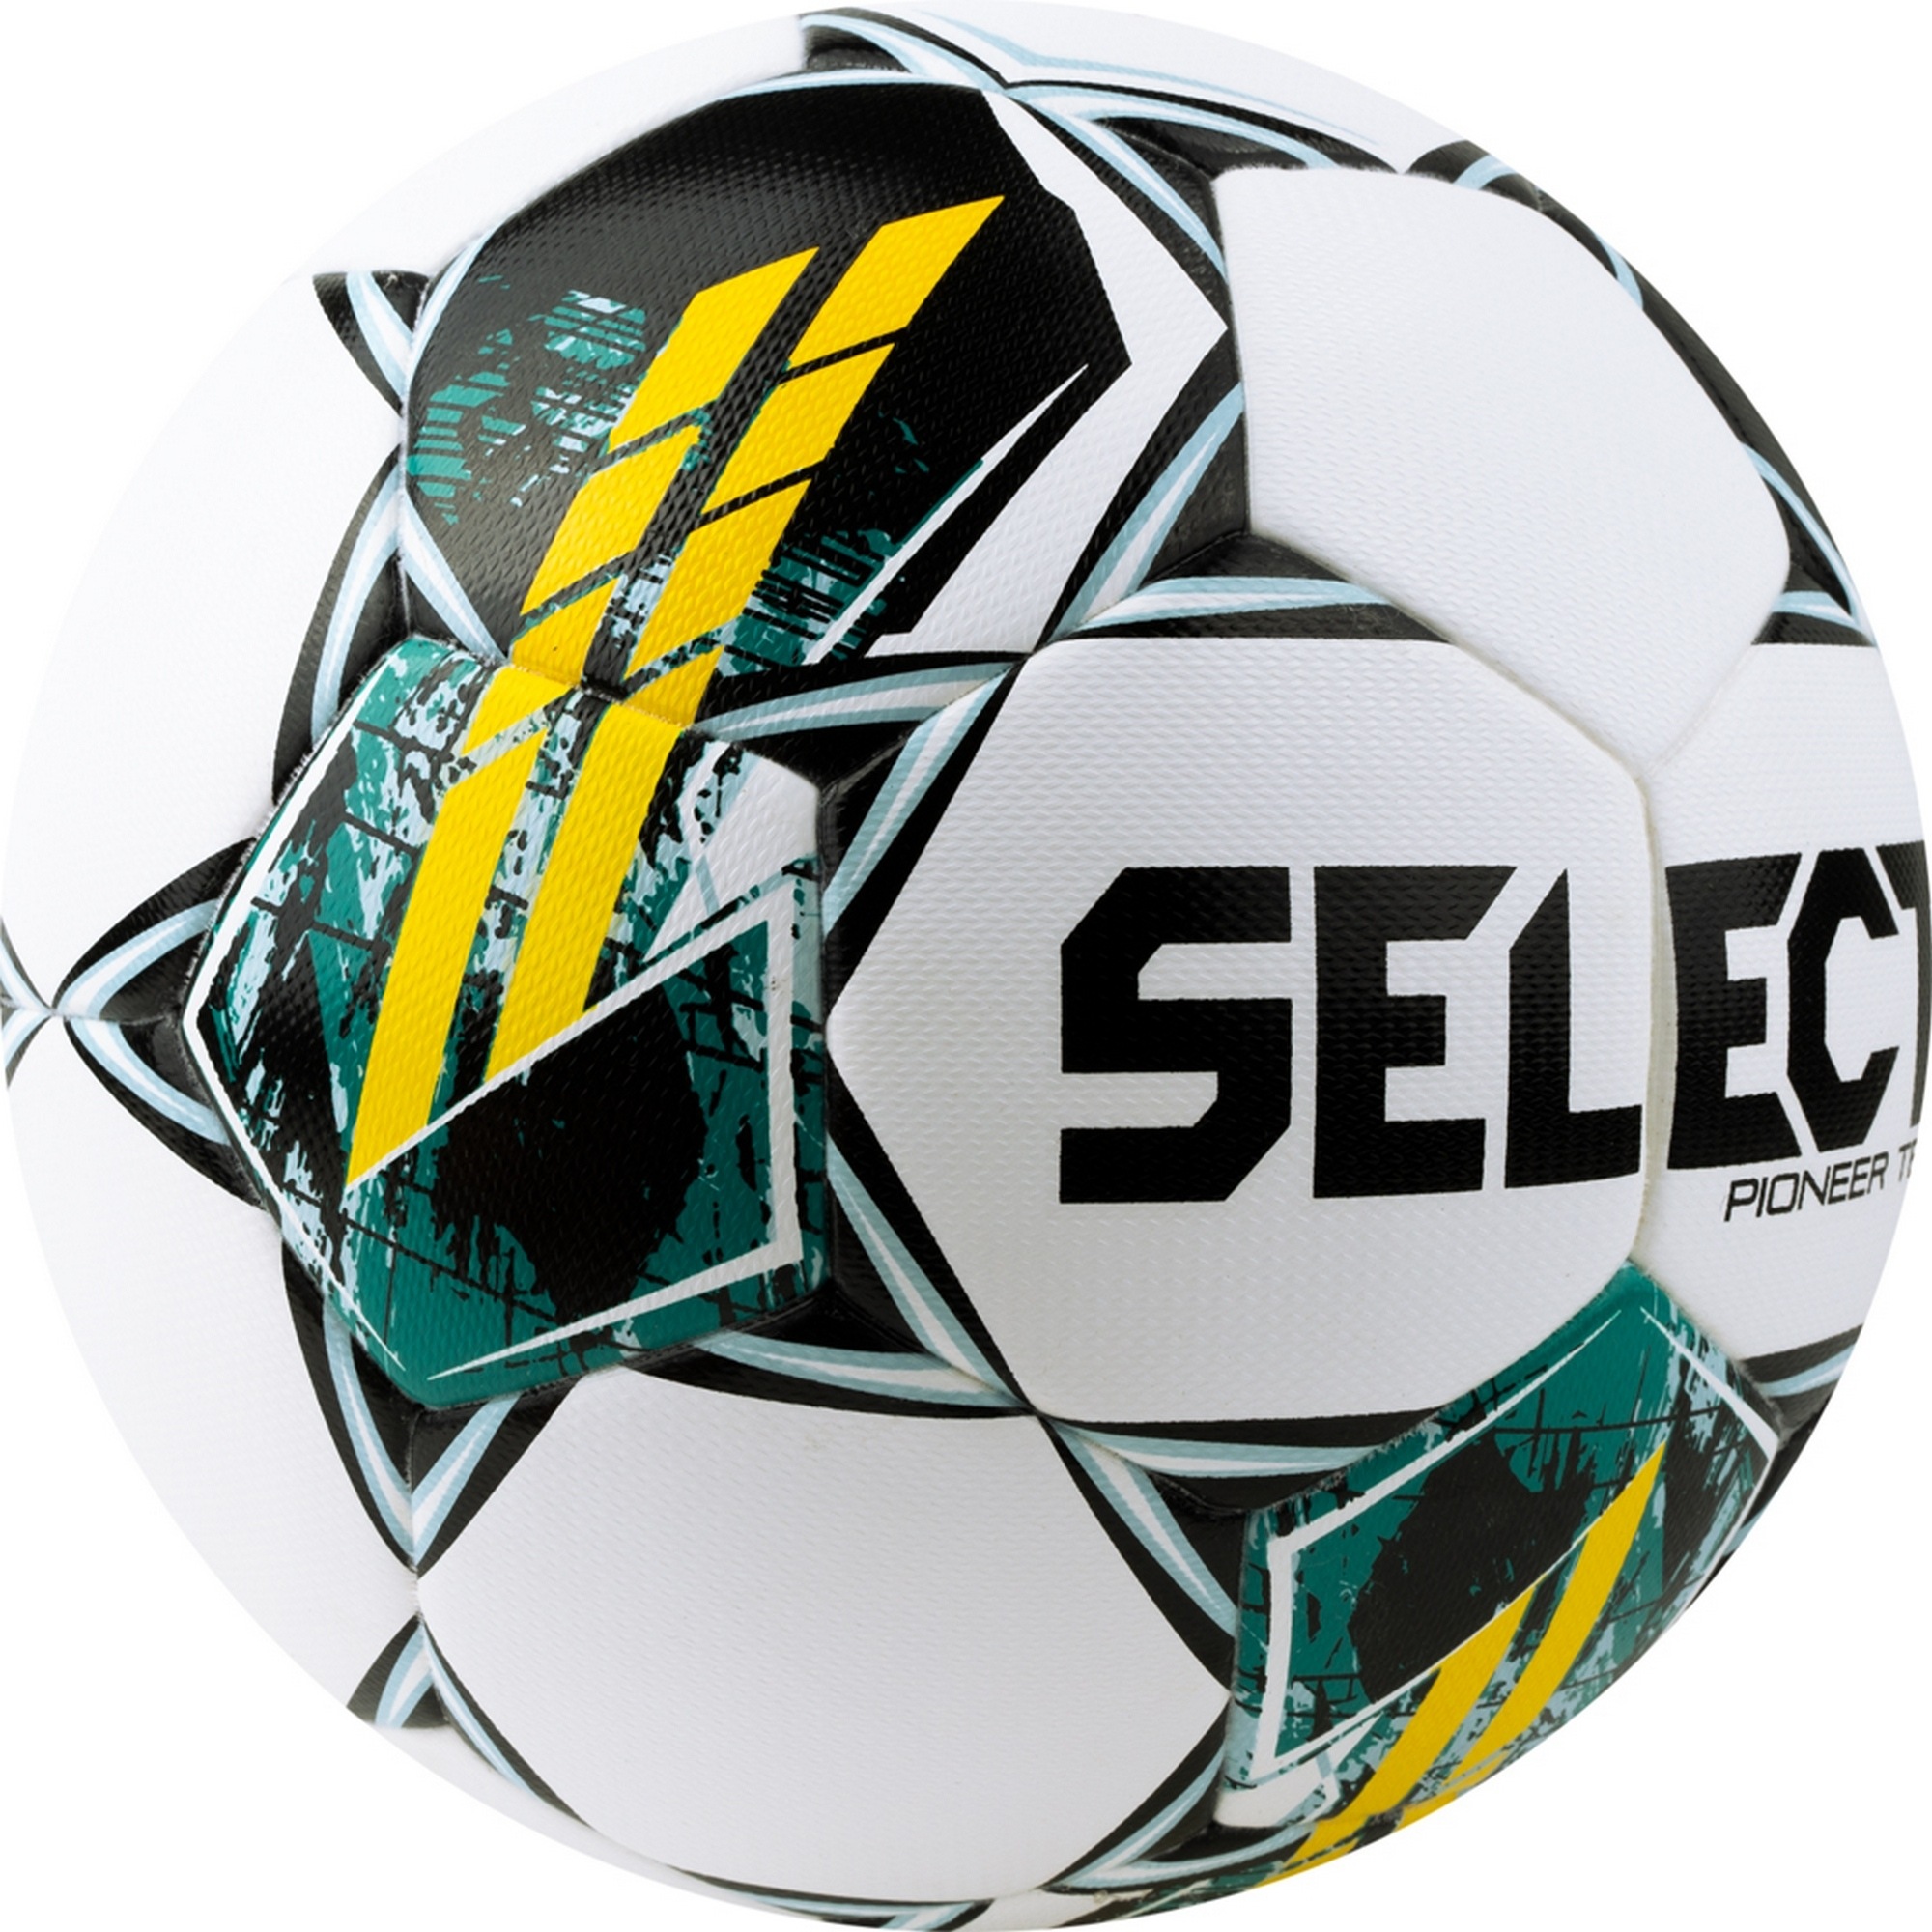 Мяч футбольный Select Pioneer TB V23 0864060005 р.4 2000_2000